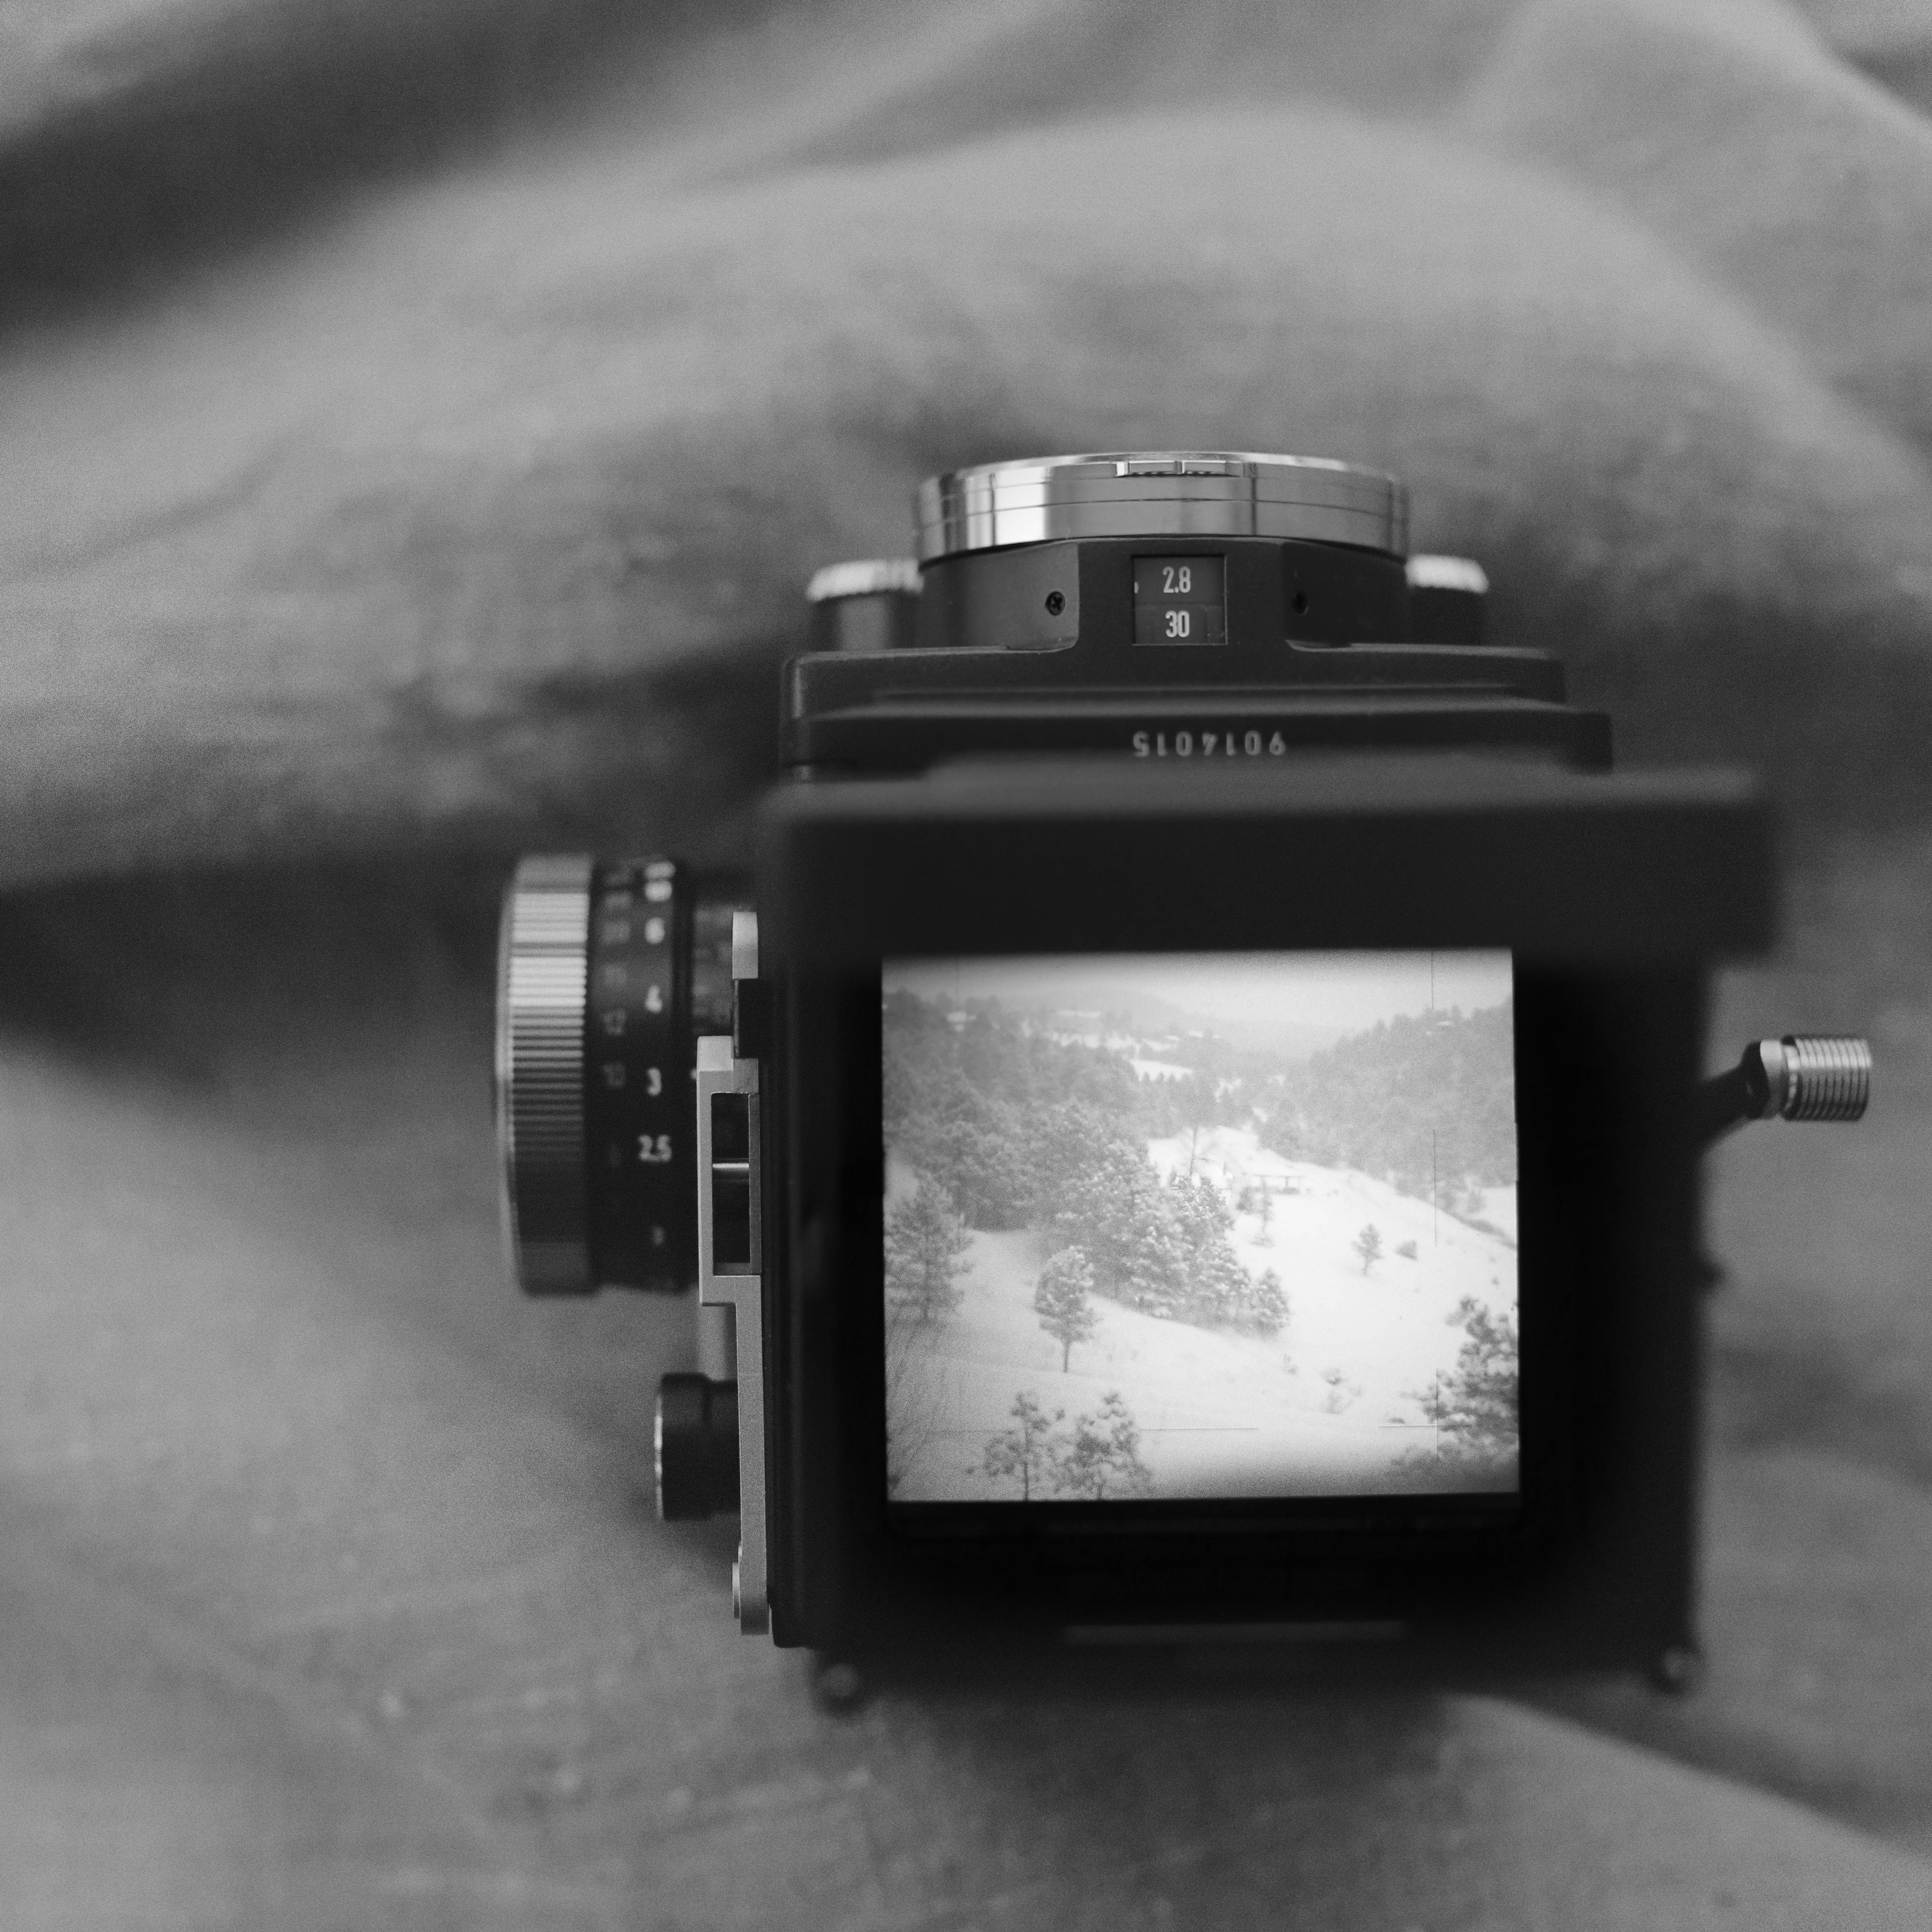 Rolleiflex 2.8 FX Medium Format Twin Lens Reflex Camera Review ...